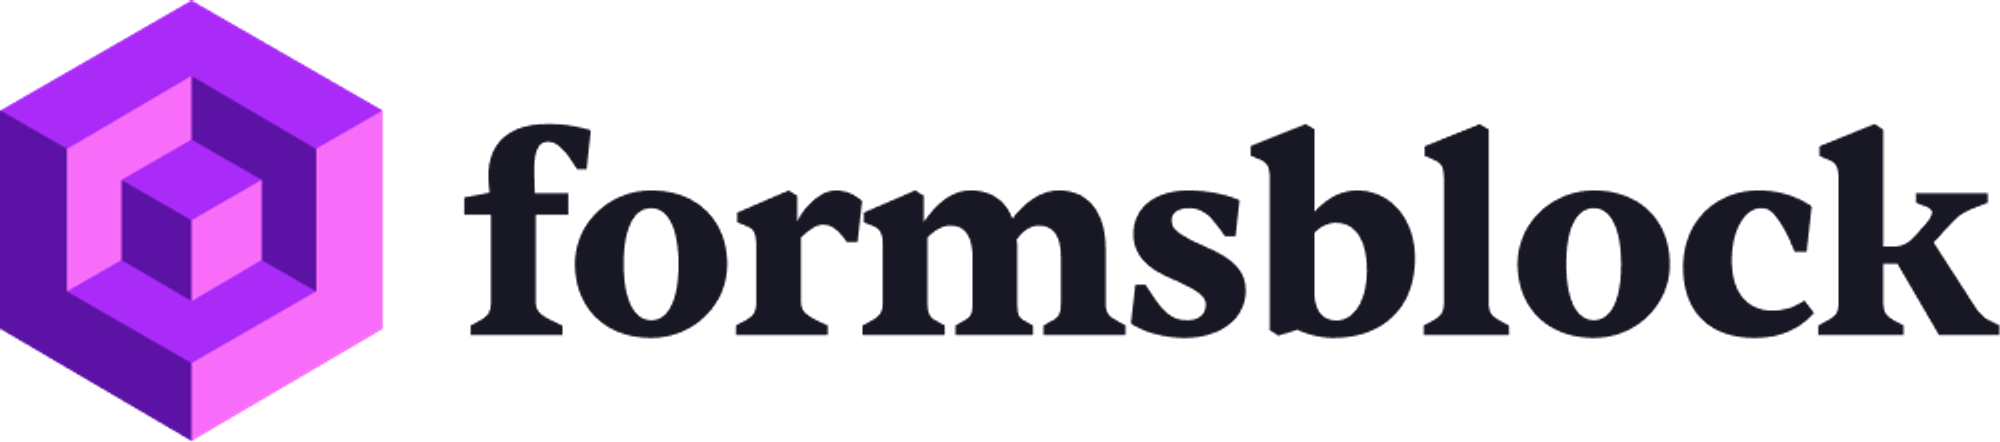 Modern logo design for formsblock.com